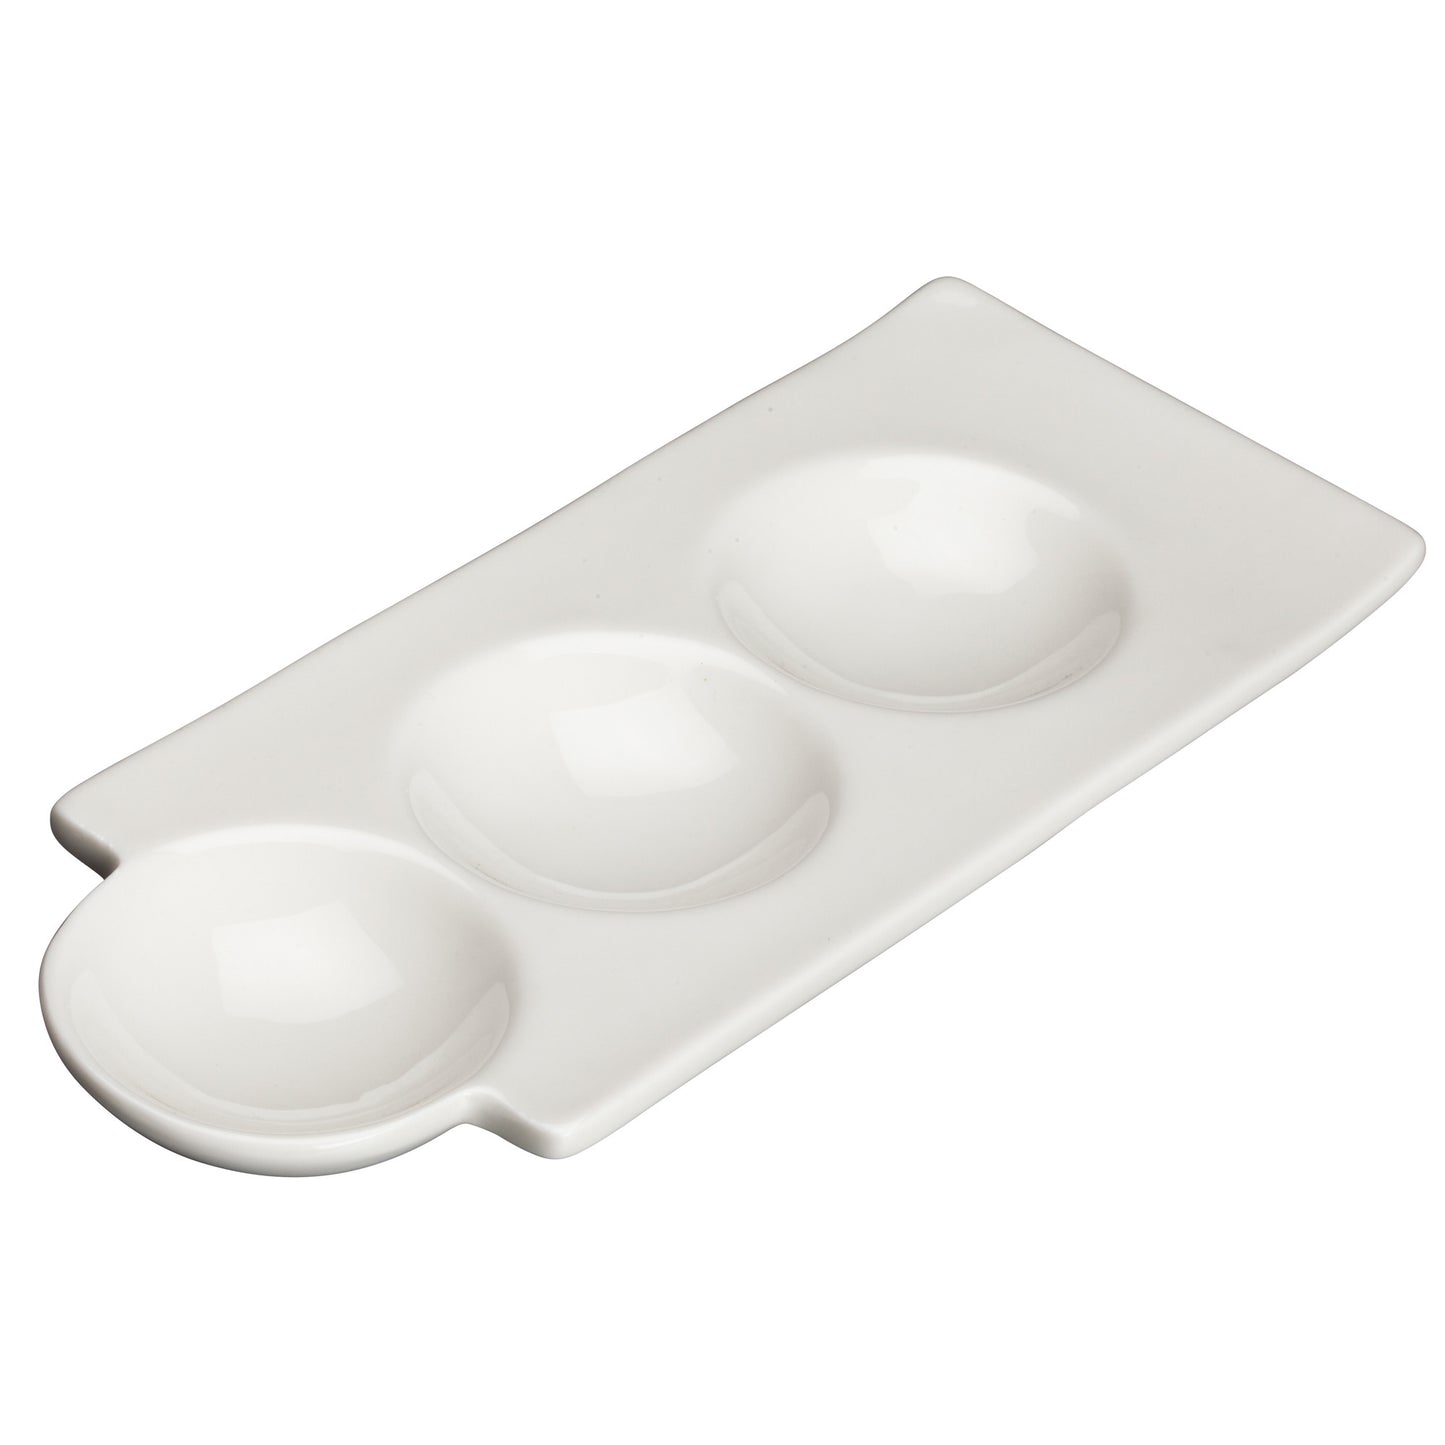 WDP017-107 - 9-1/2" Porcelain Duo Dish, Bright White, 36 pcs/case